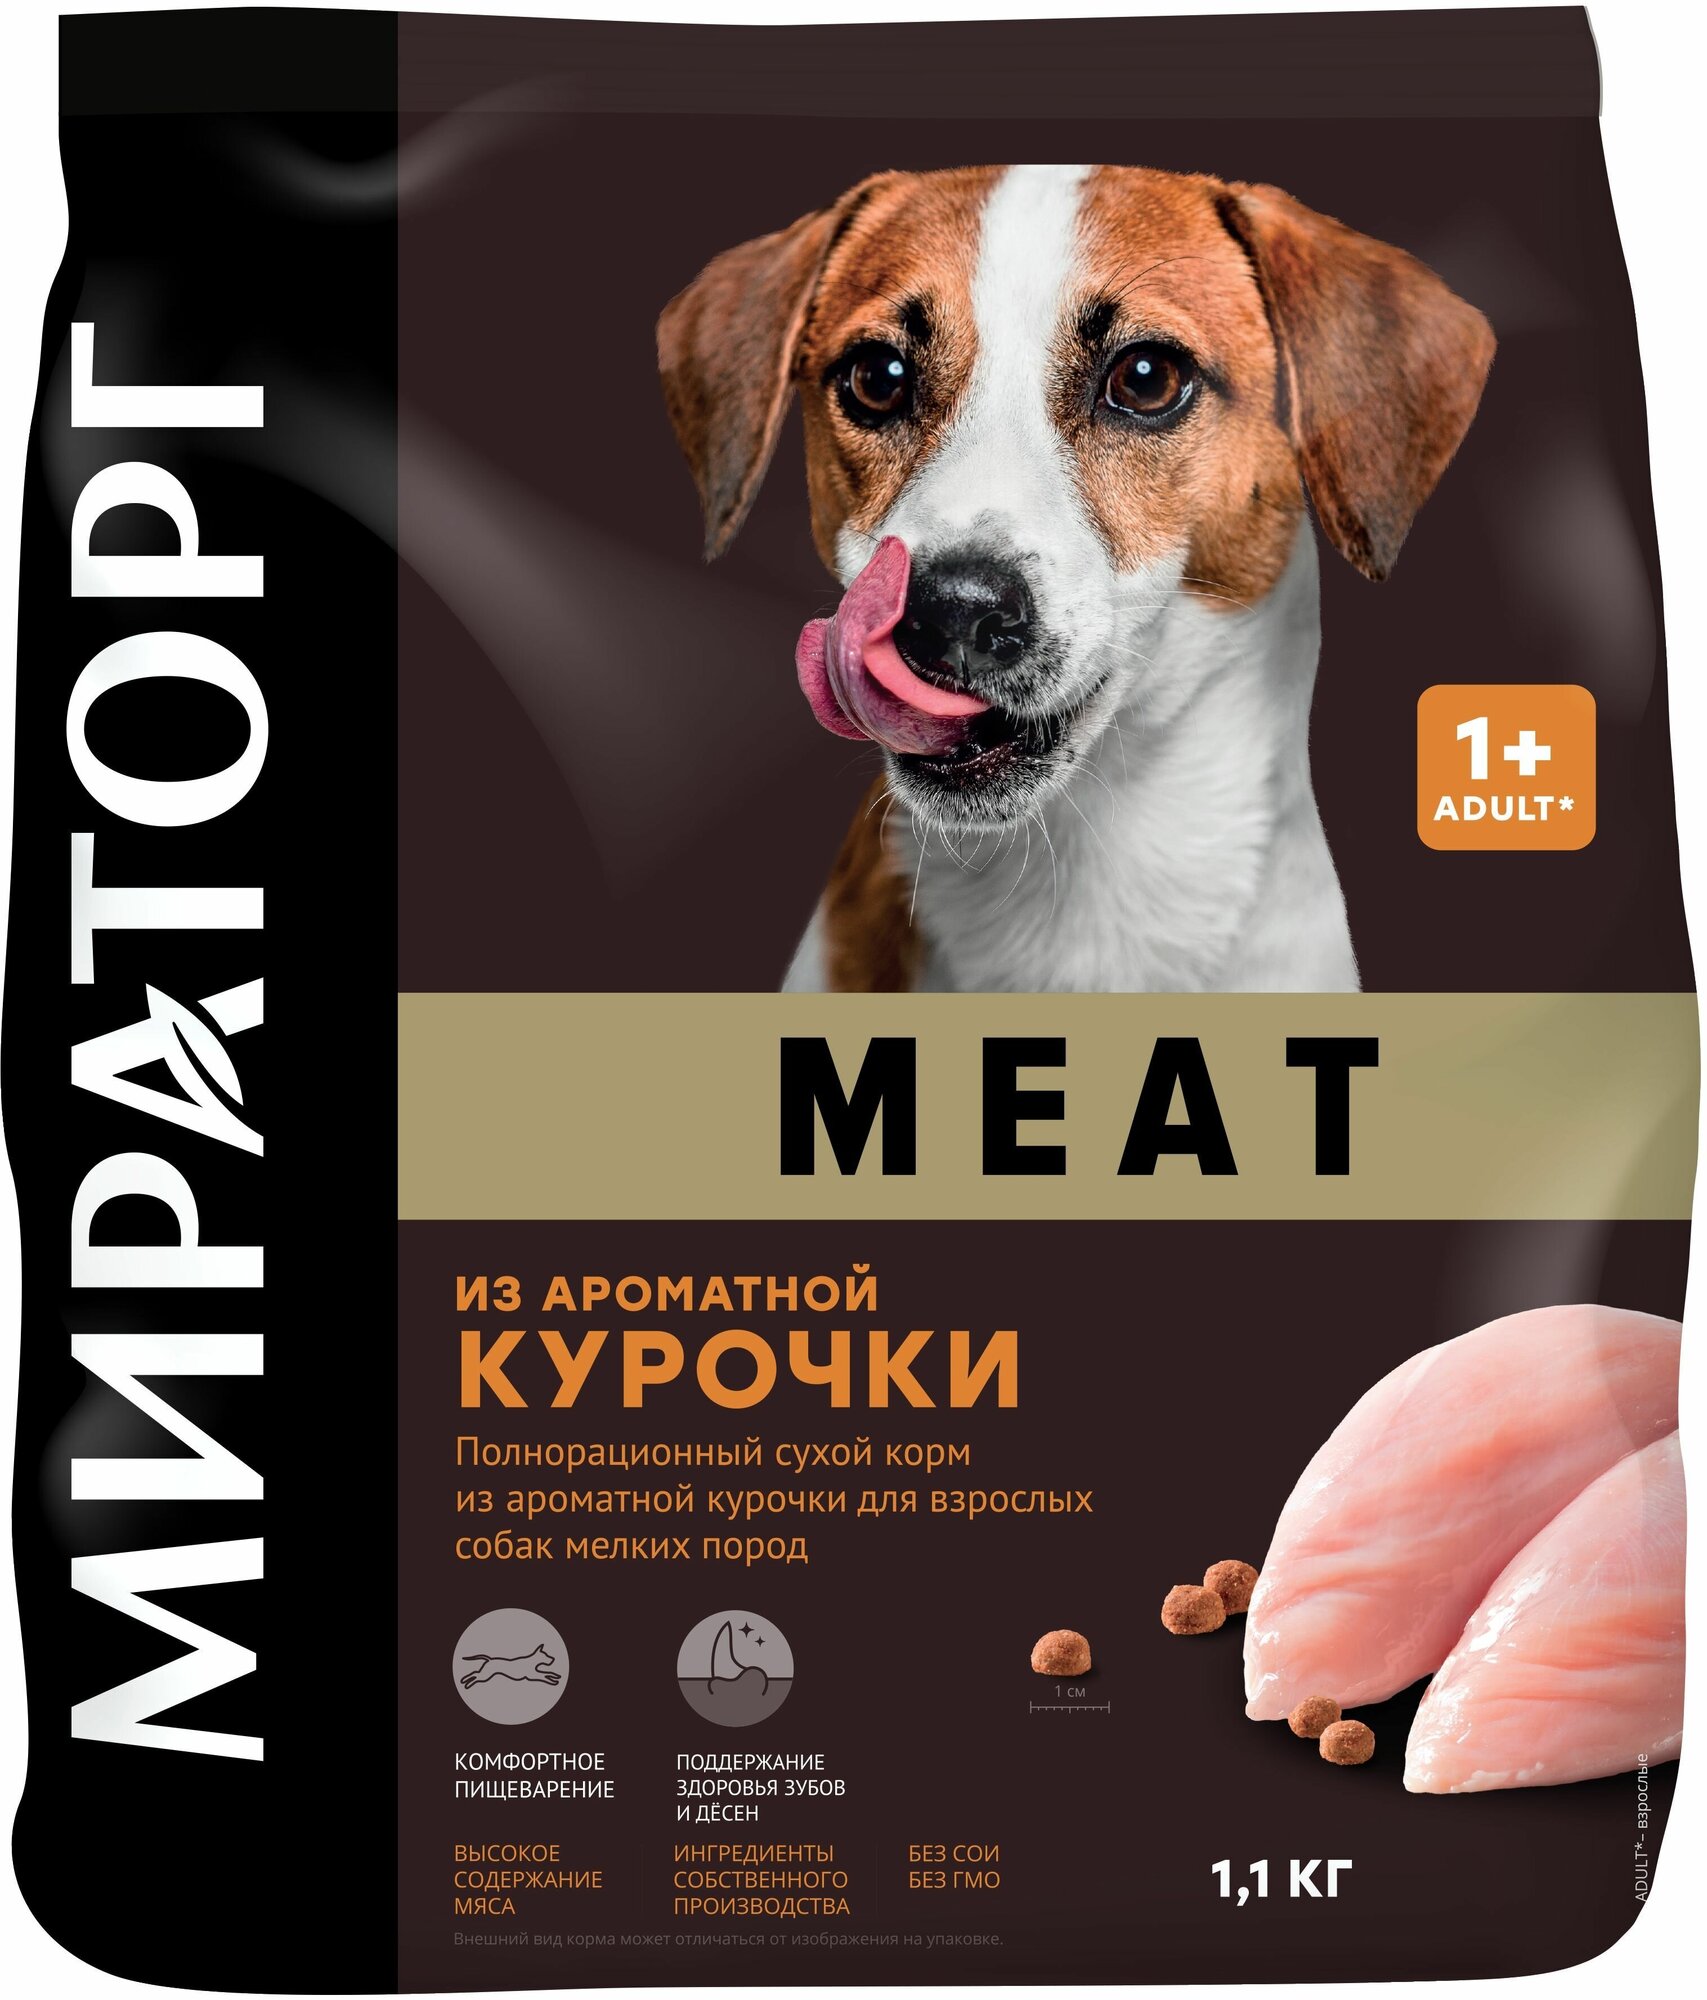 Сухой корм Мираторг Meat для взрослых собак мелких пород, с ароматной курочкой 1.1 кг